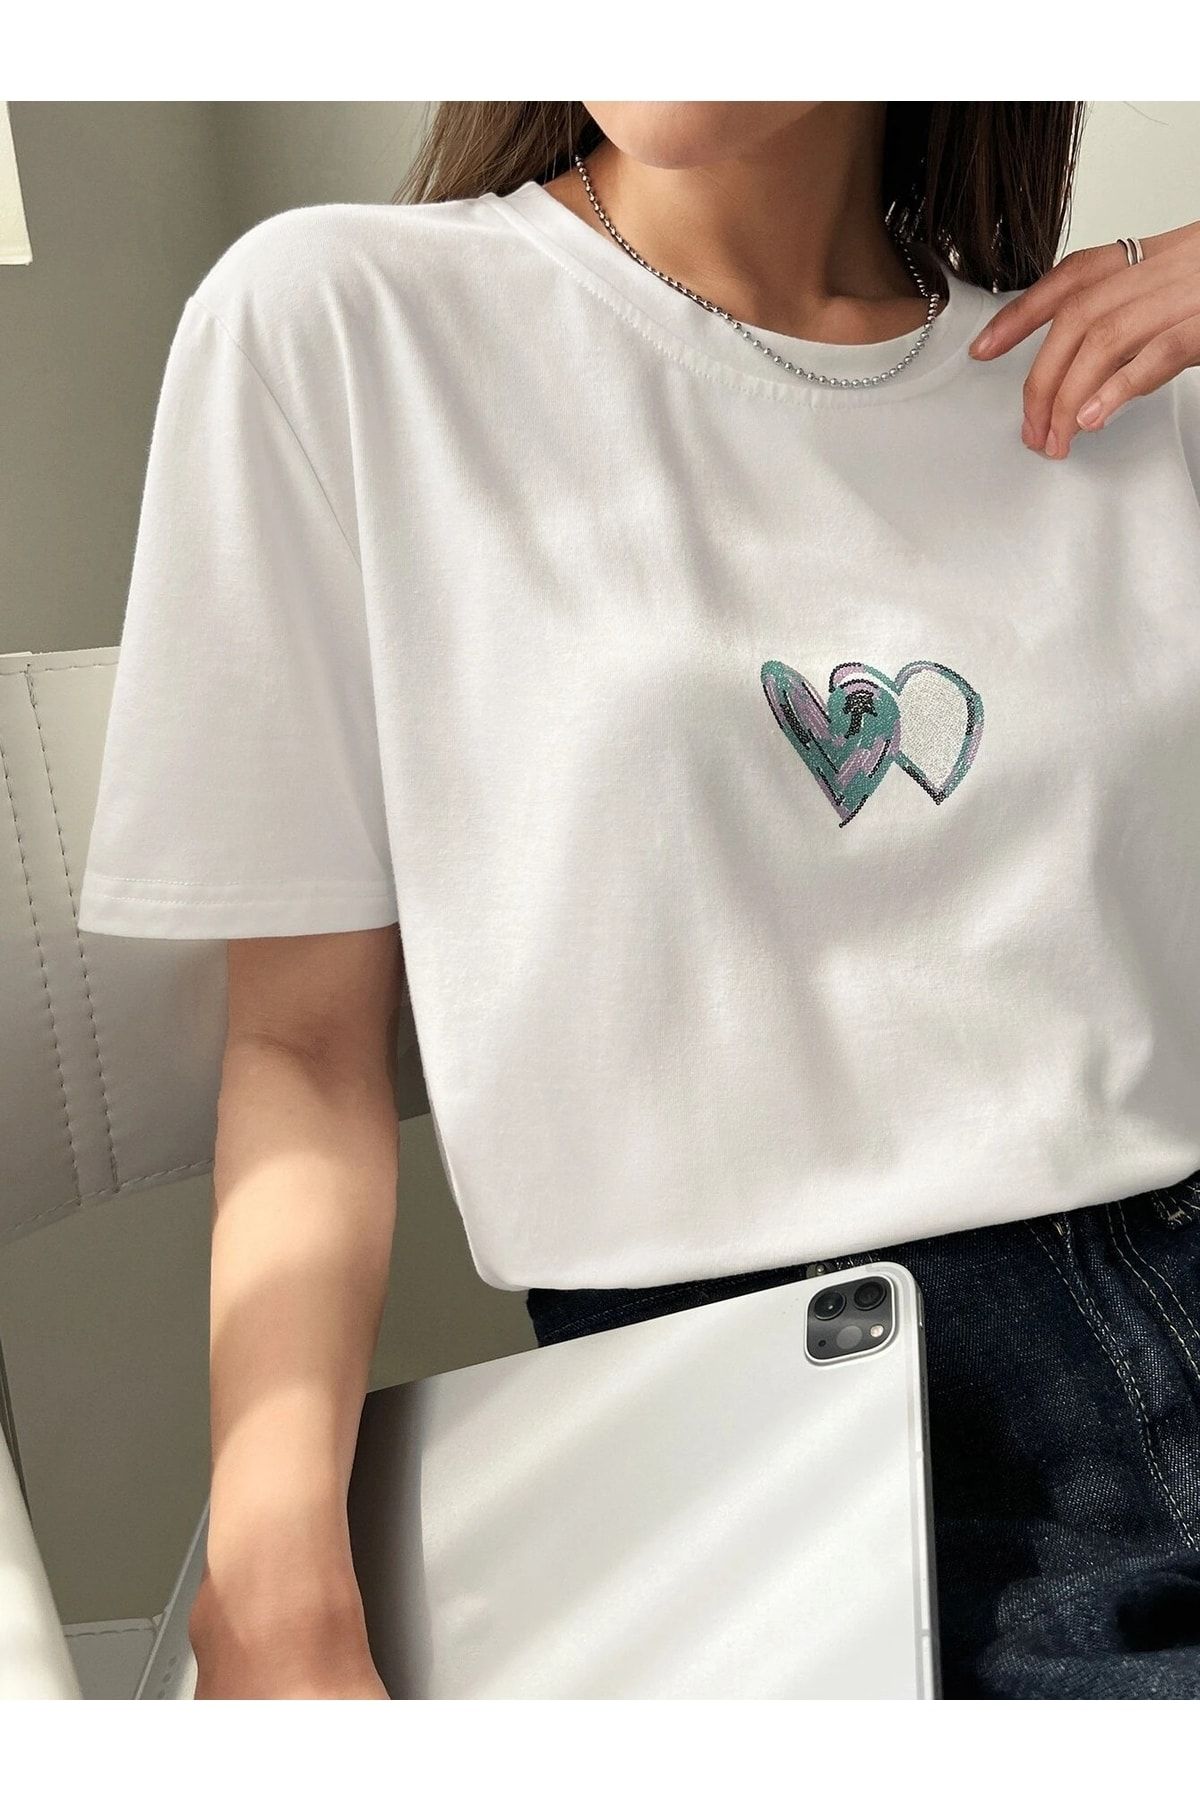 Trendseninle Kadın Beyaz Çift Heart Baskılı Oversize T-shirt